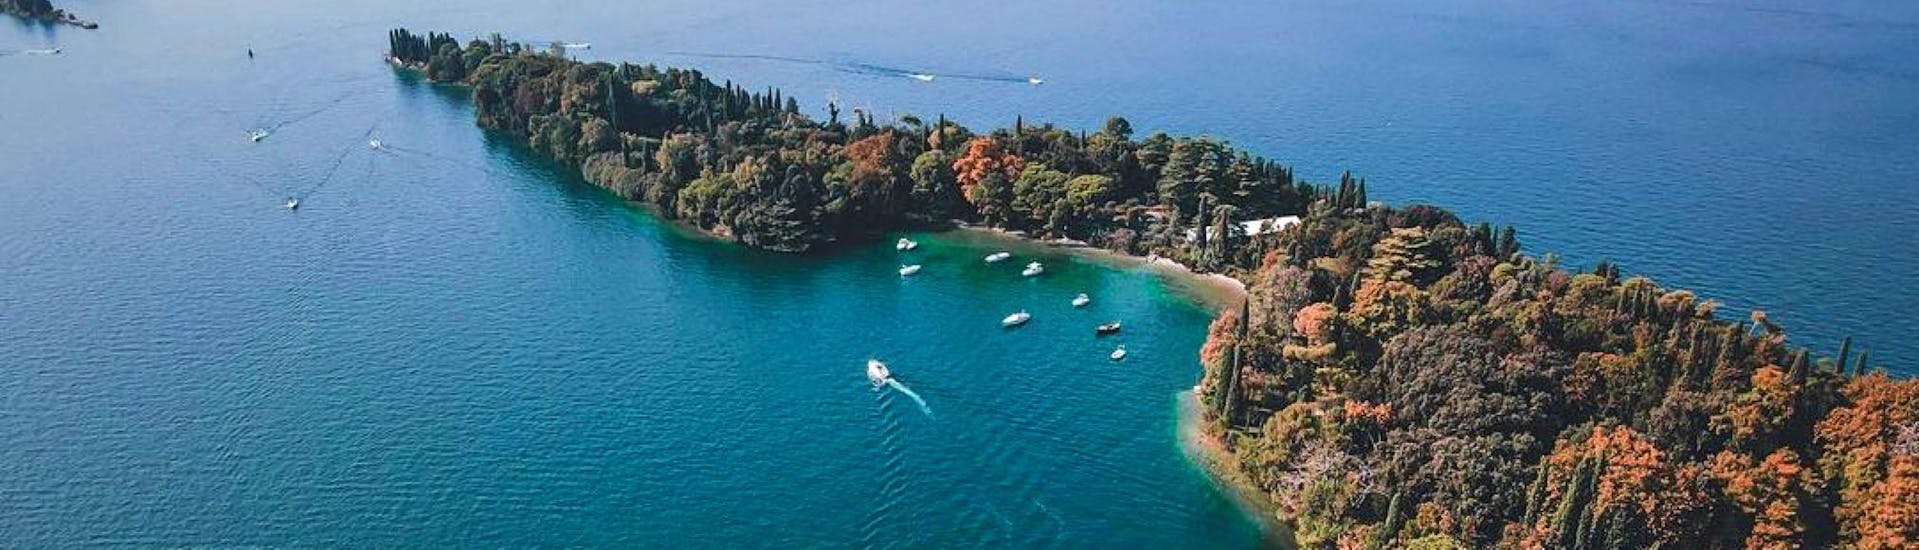 La meravigliosa penisola di Sirmione può essere ammirata in tutta la sua bellezza durante le nostre escursioni in barca. 